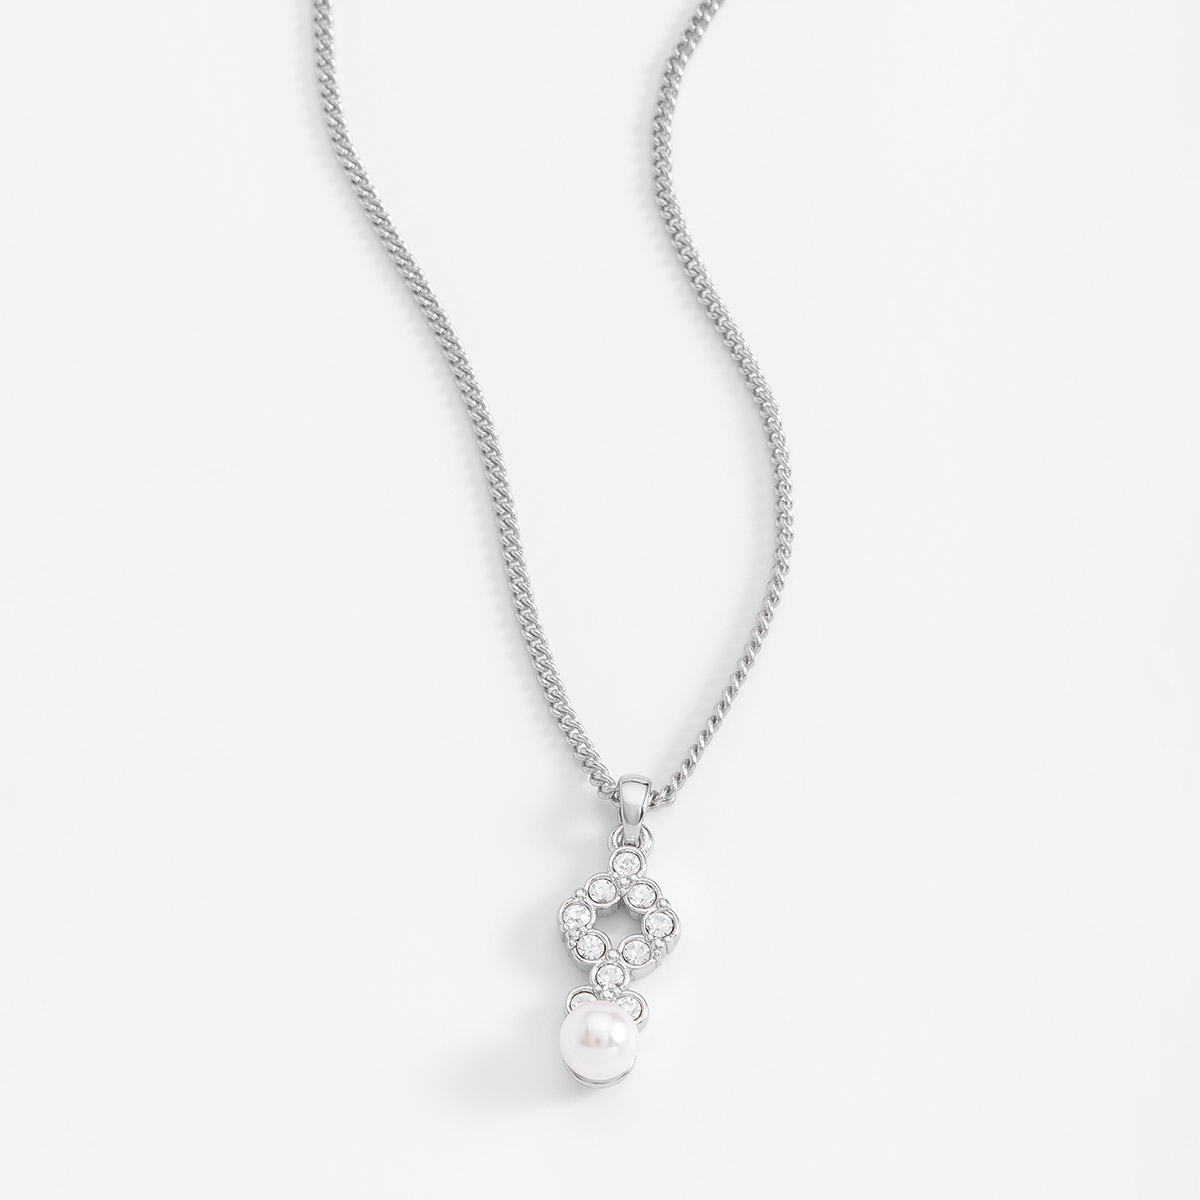 Deslumbrante collar en baño de platino, acompañado con piedras en tono cristal y una reluciente perla en tono cream. 
-Collar con Dije
-40 cm + 10 cm ext.
-Platino